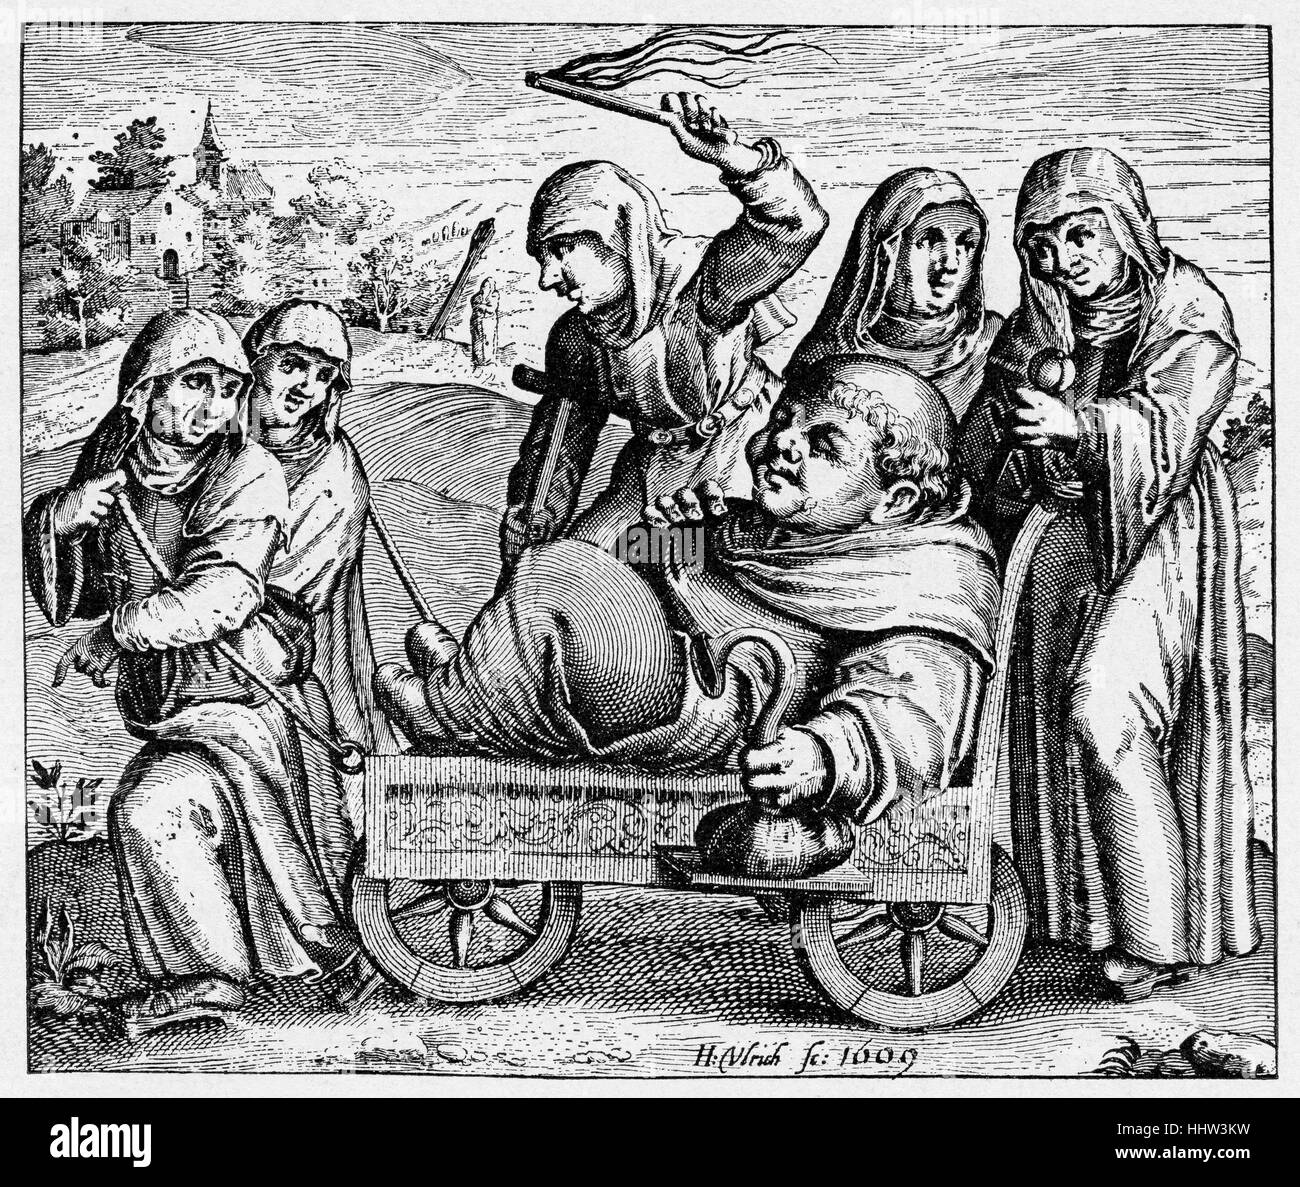 L'ère de la réforme, caricature, 1609 Représentation de allégoriques du moine insobriety Banque D'Images